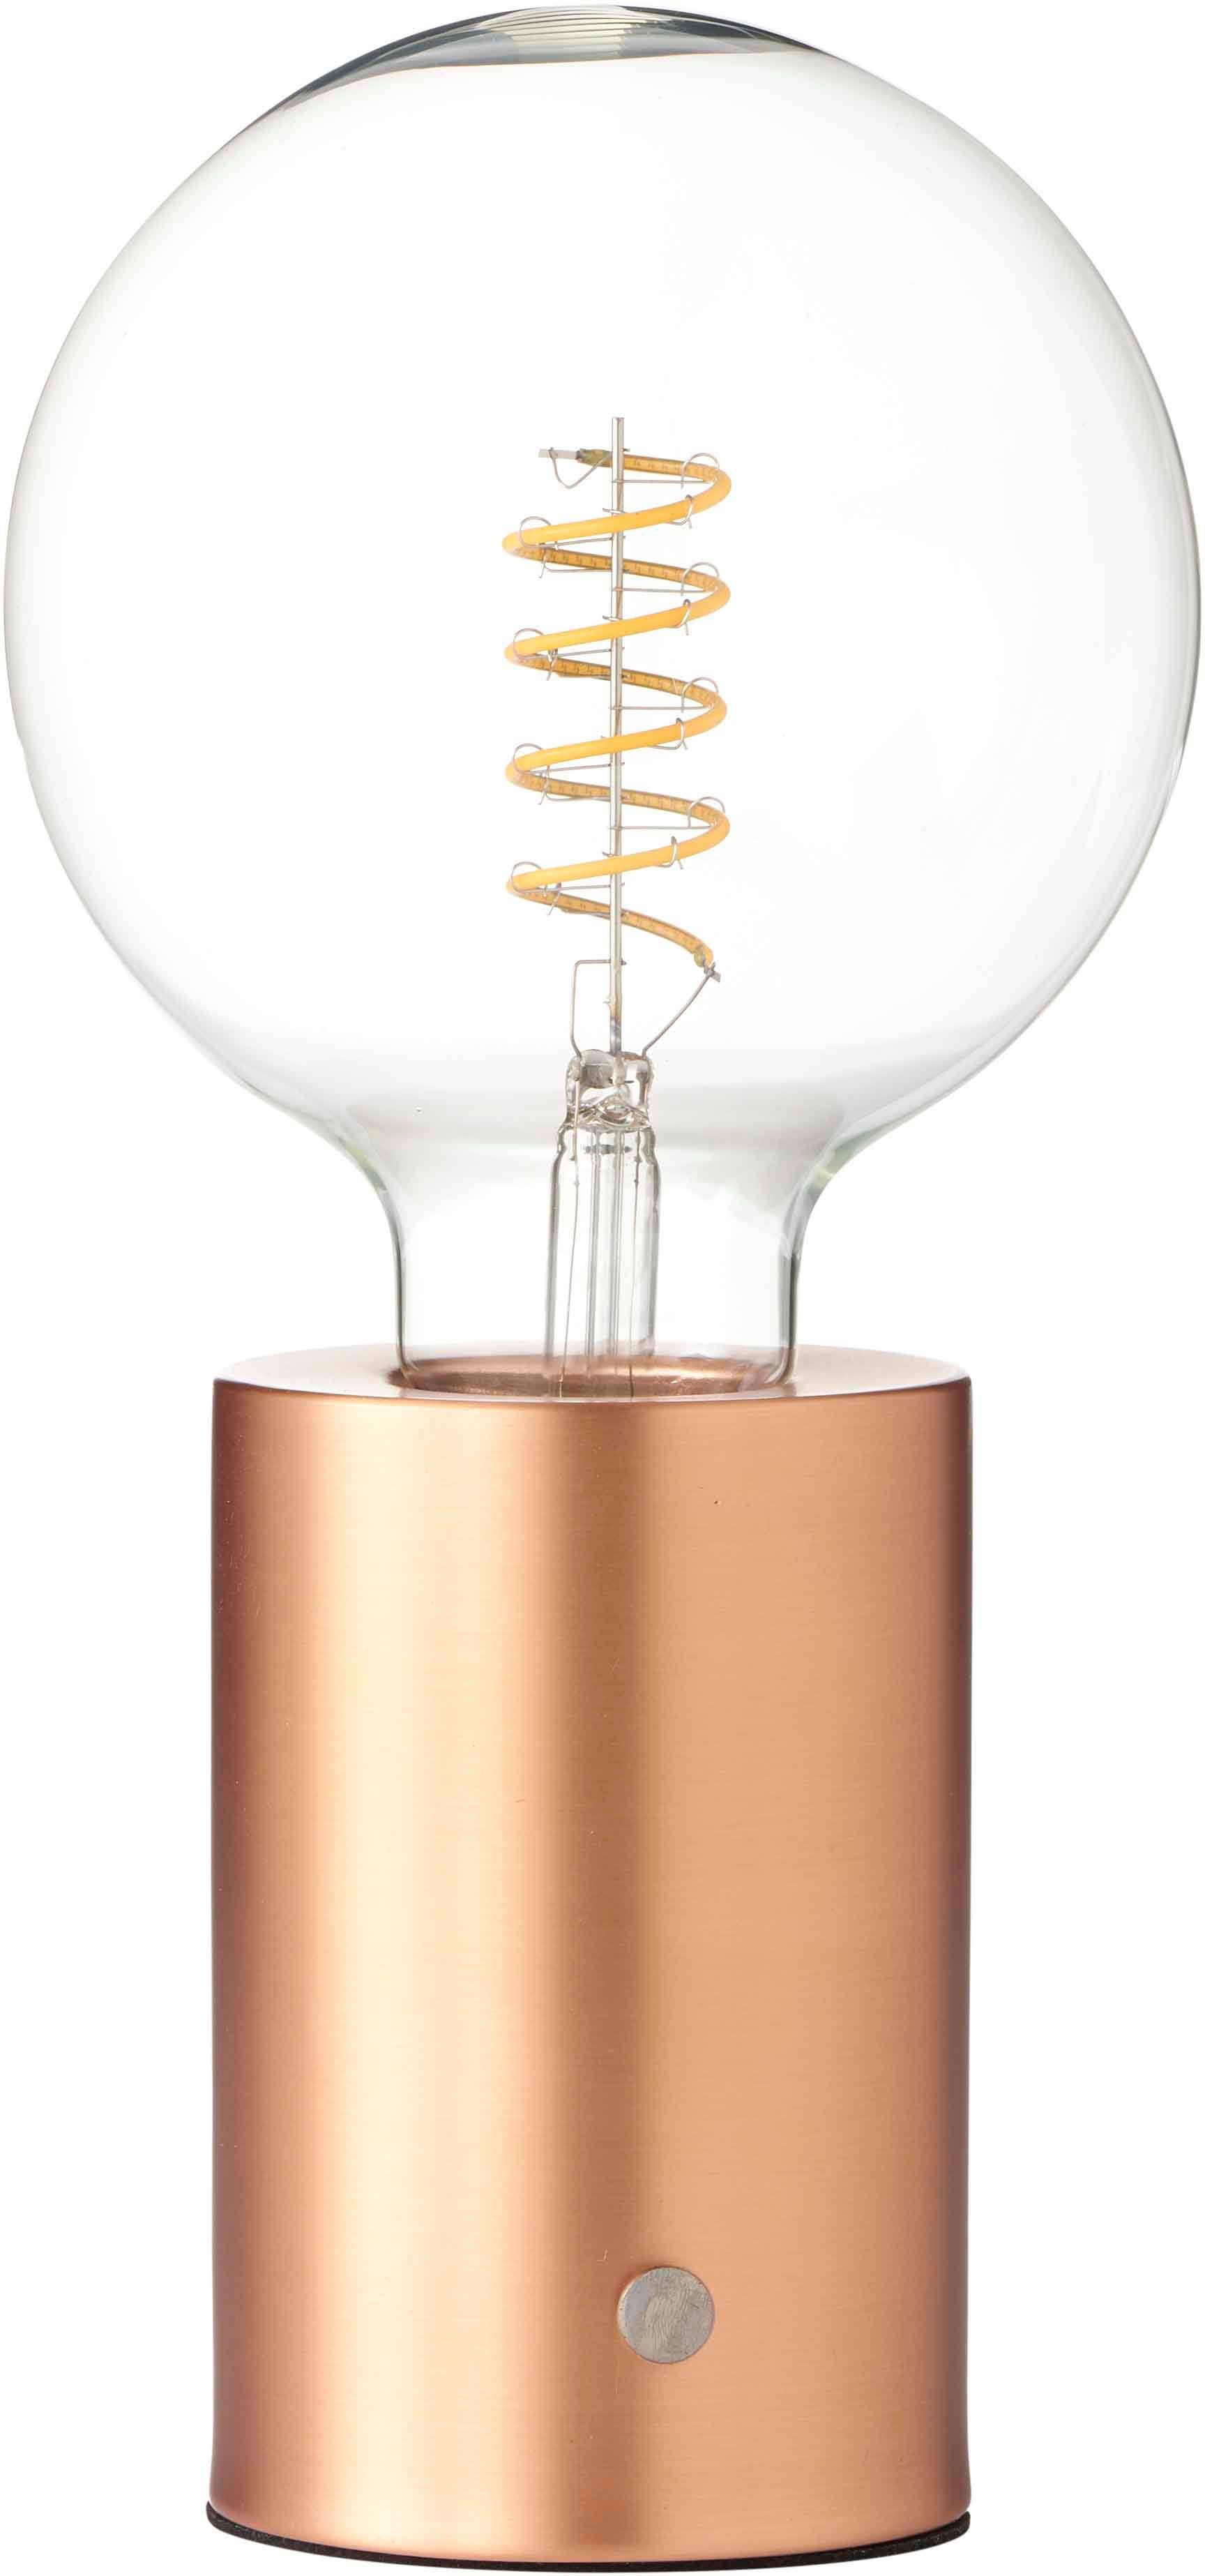 Northpoint Nachttischlampe LED Akku Tischlampe Tischleuchte Edison Glühbirne mit Glühdraht Roségold klare Birne